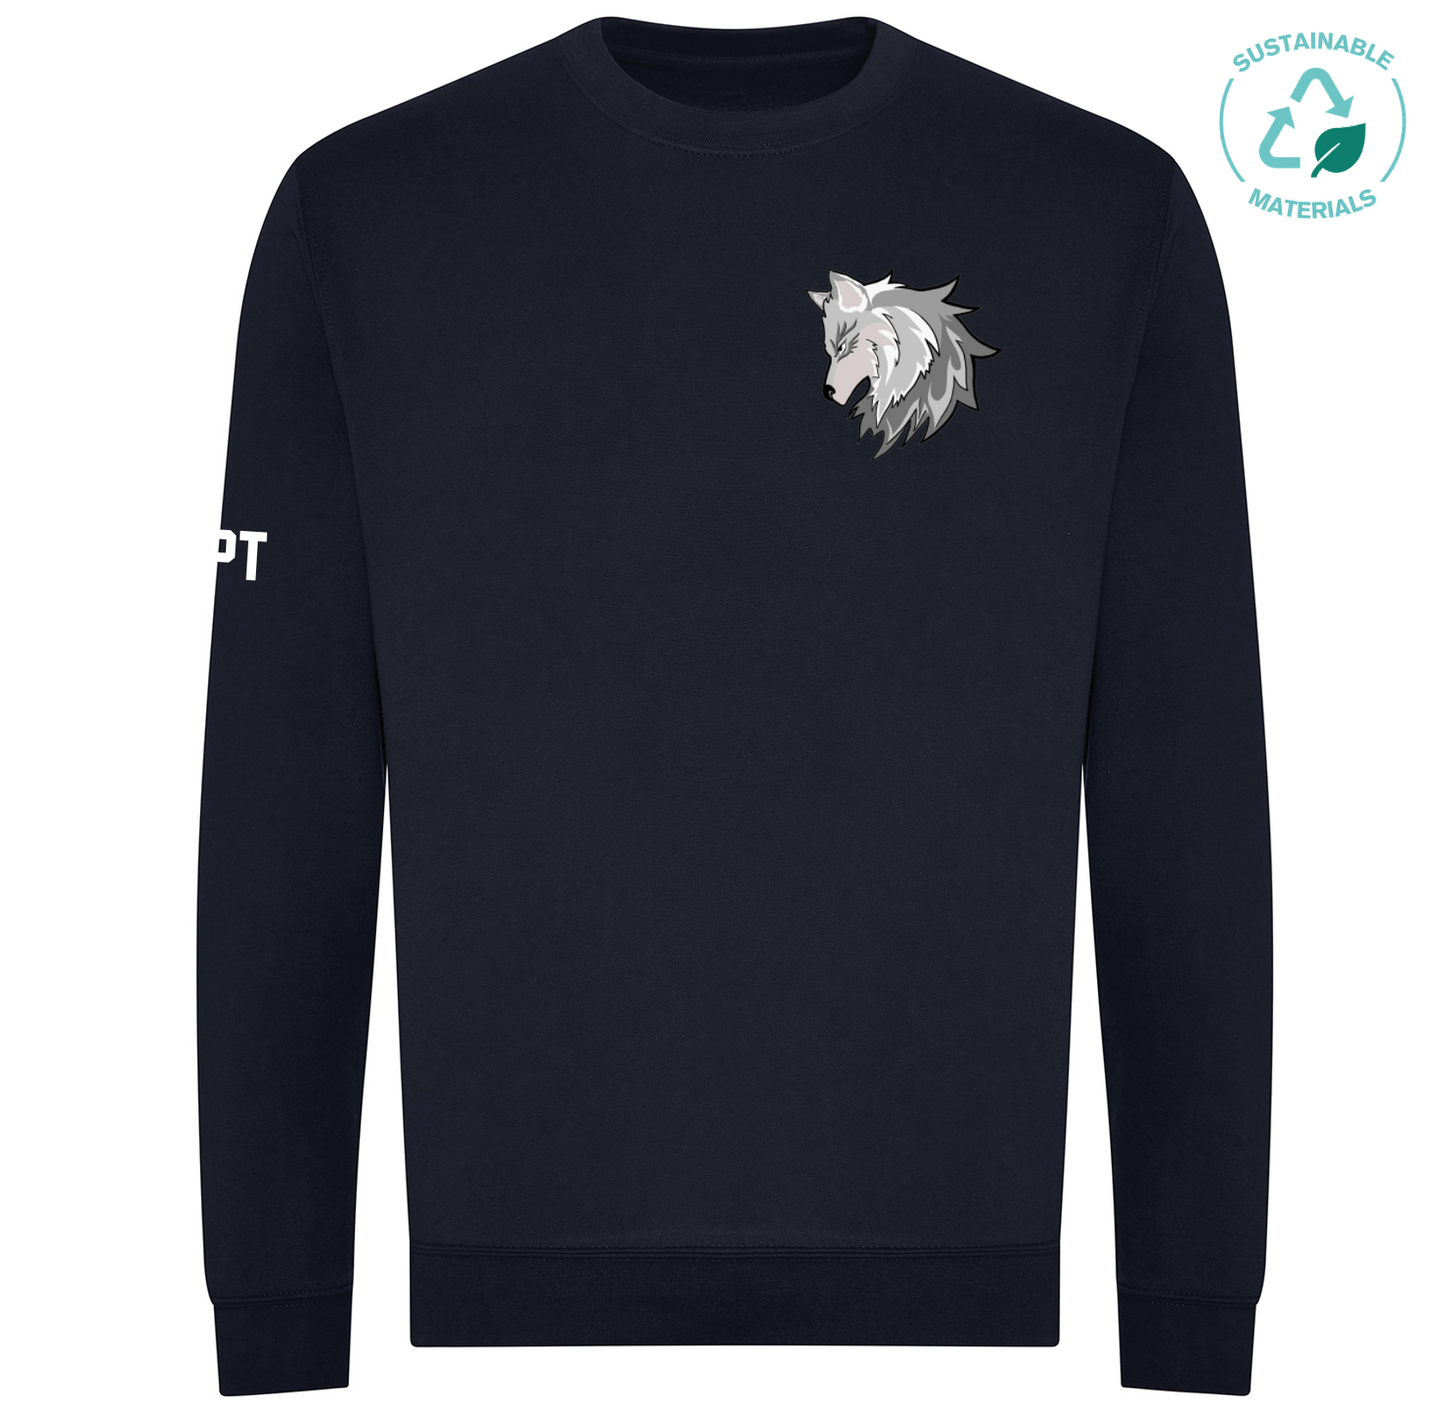 Uni of Kent Lacrosse Organic Sweatshirt